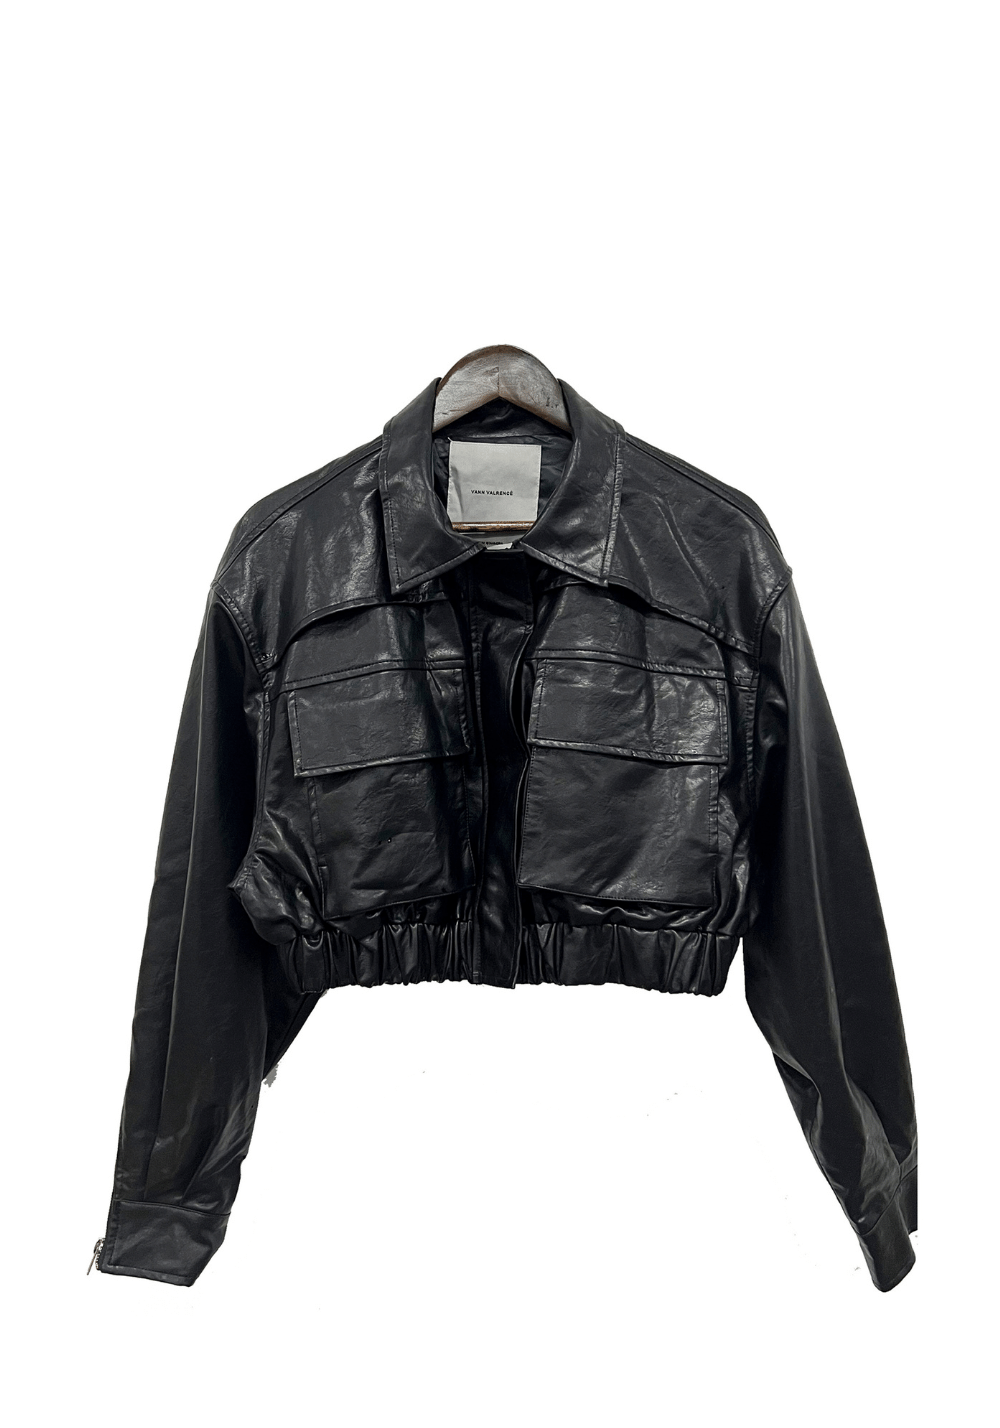 Short Patchwork Leather Jacket - PSYLOS 1, Short Patchwork Leather Jacket, Jacket, VANN VALRENCÉ, PSYLOS 1